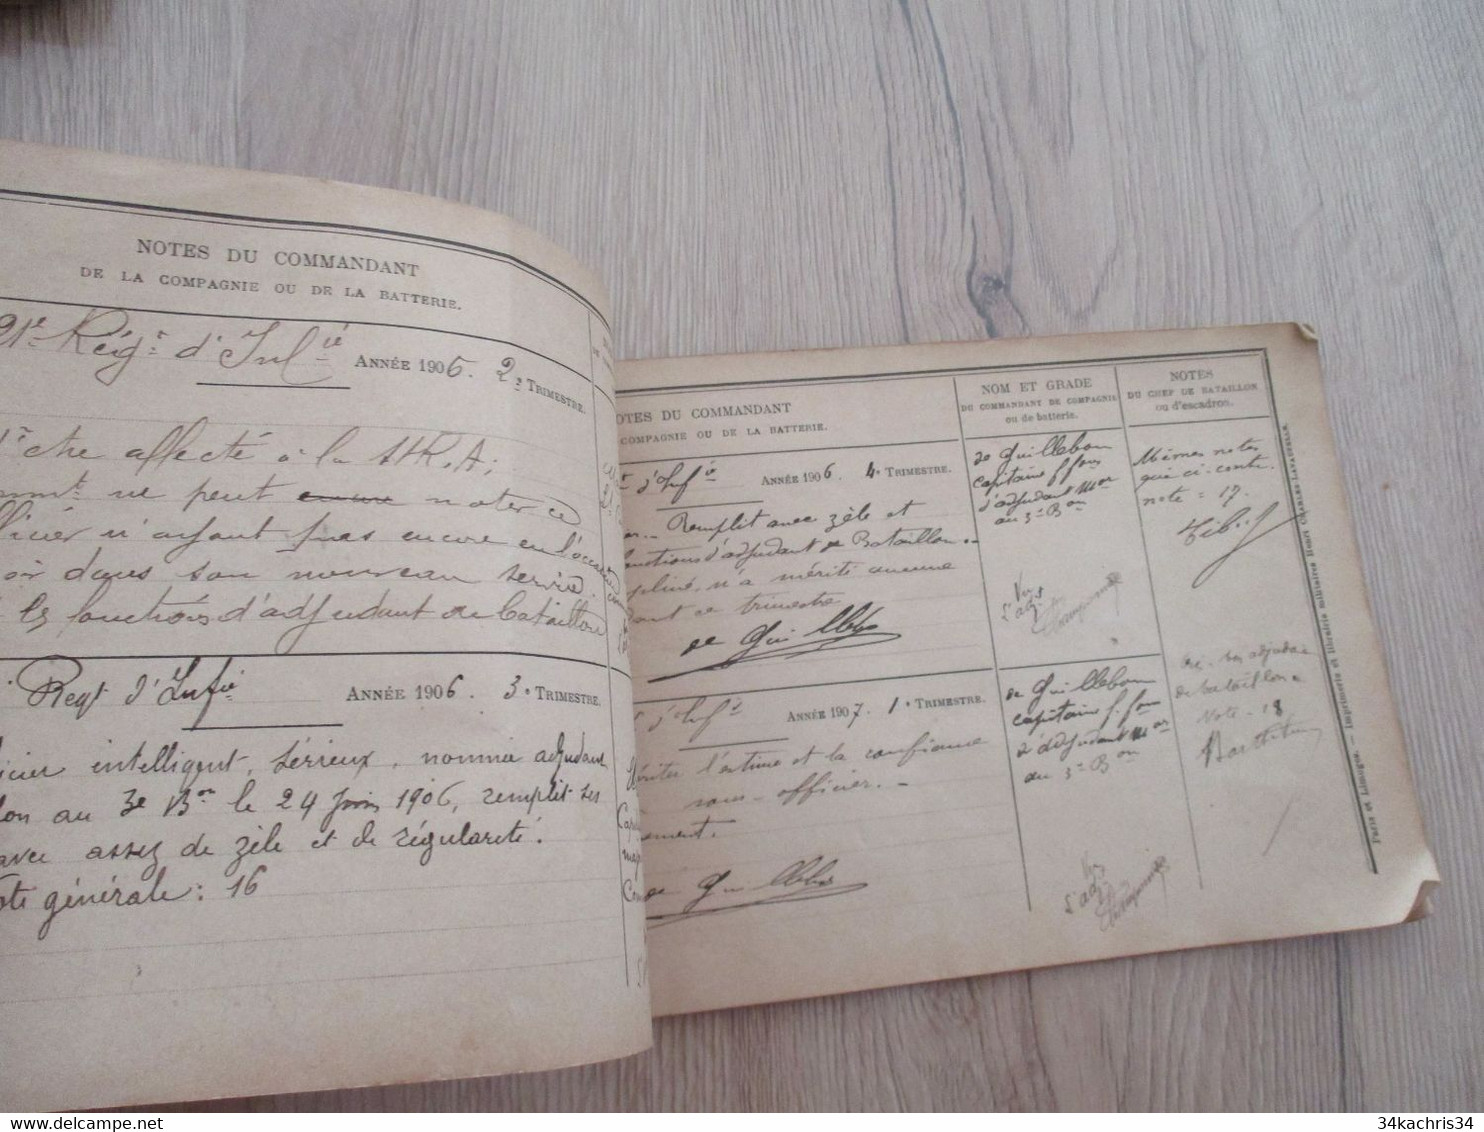 Rare 121 ème régiment Infanterie avec photo Champonnier carnet de notes 12 p manuscrites de commentaires su officier....